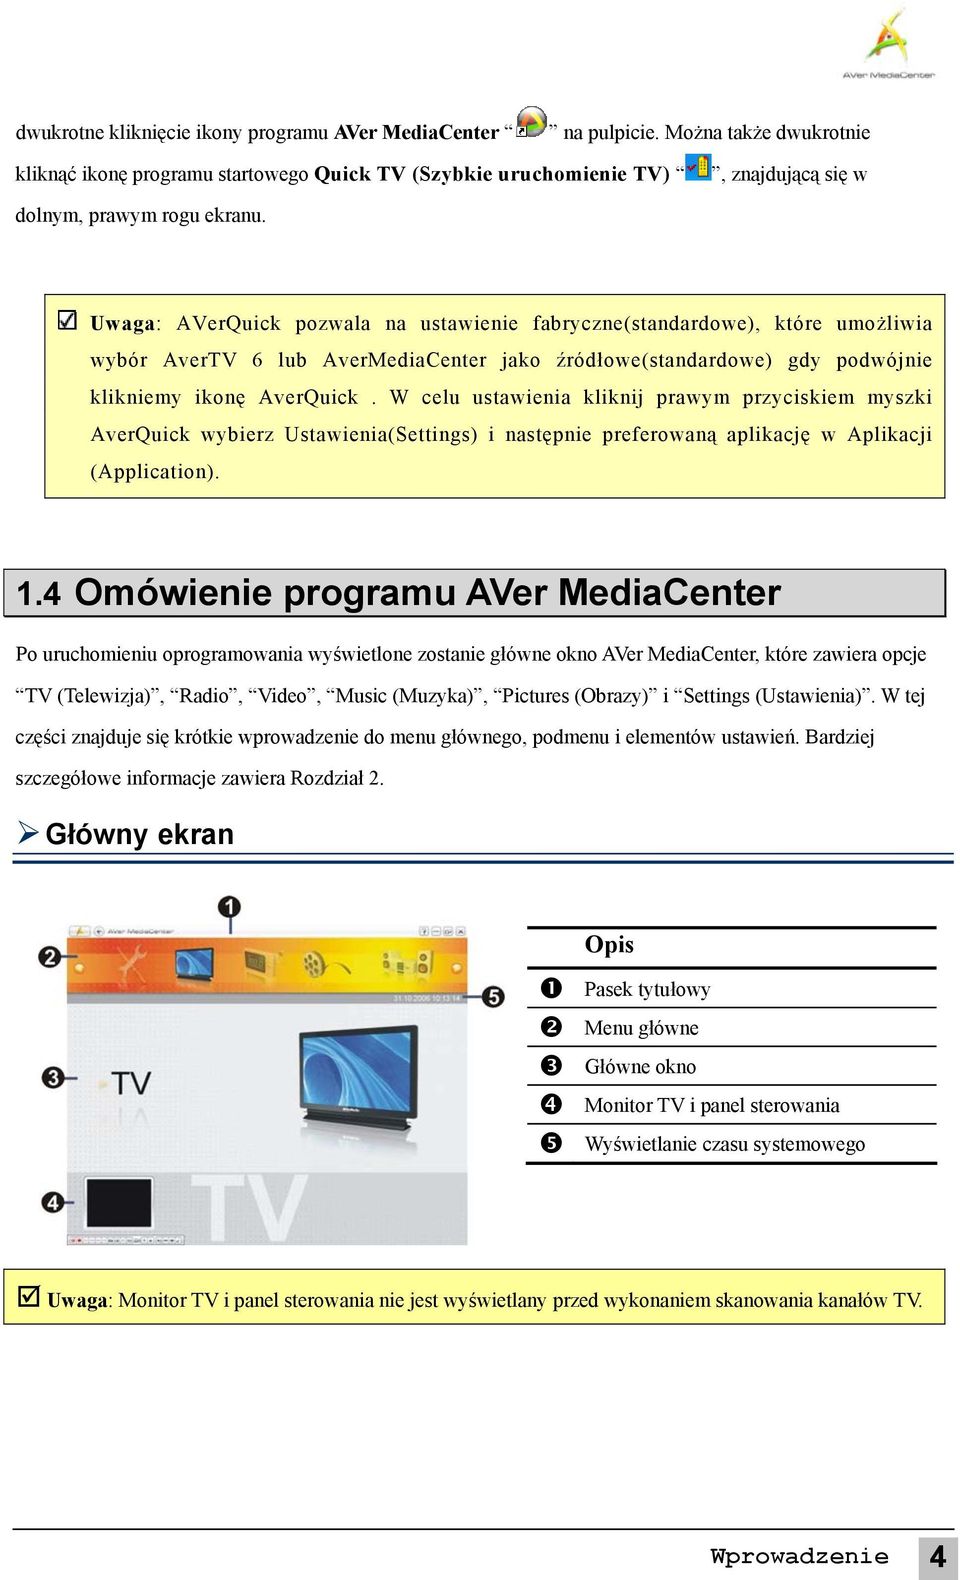 Uwaga: AVerQuick pozwala na ustawienie fabryczne(standardowe), które umożliwia wybór AverTV 6 lub AverMediaCenter jako źródłowe(standardowe) gdy podwójnie klikniemy ikonę AverQuick.